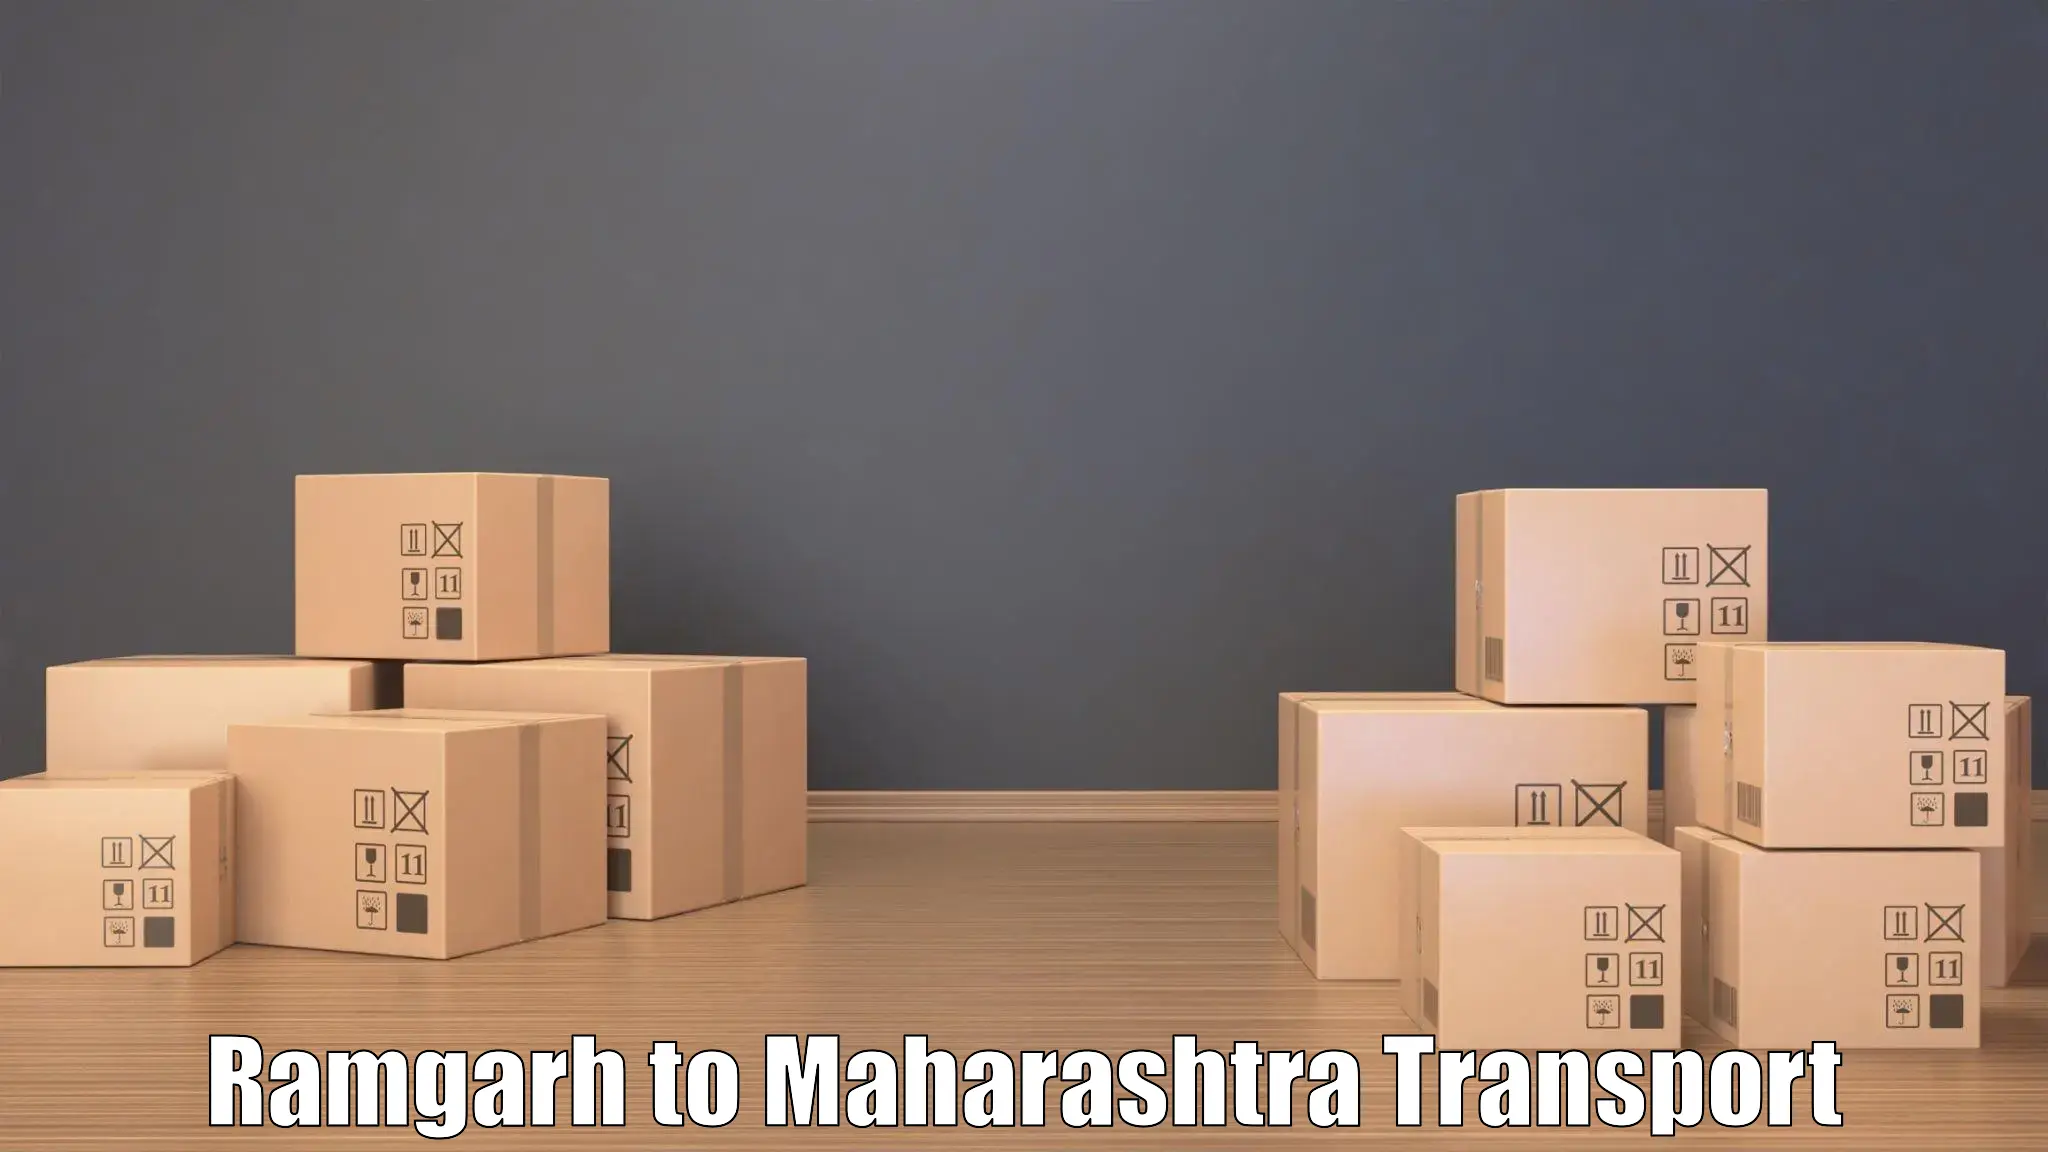 Daily transport service Ramgarh to Maharashtra